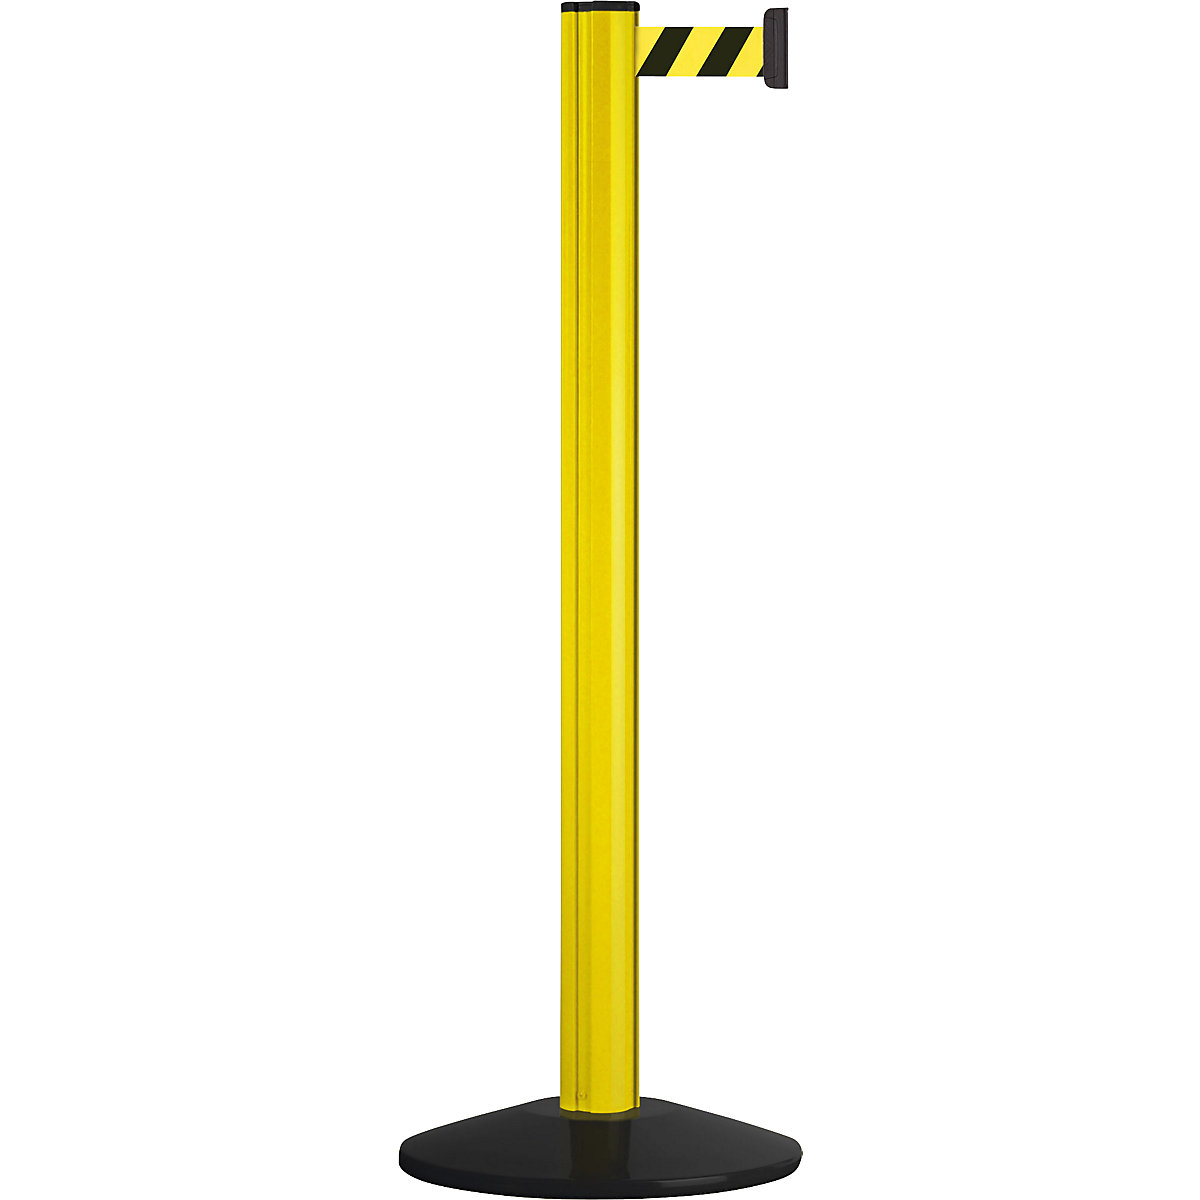 Aluminijski stup s trakom, izvlačenje trake 3700 mm, stup u žutoj boji, 1 traka-7